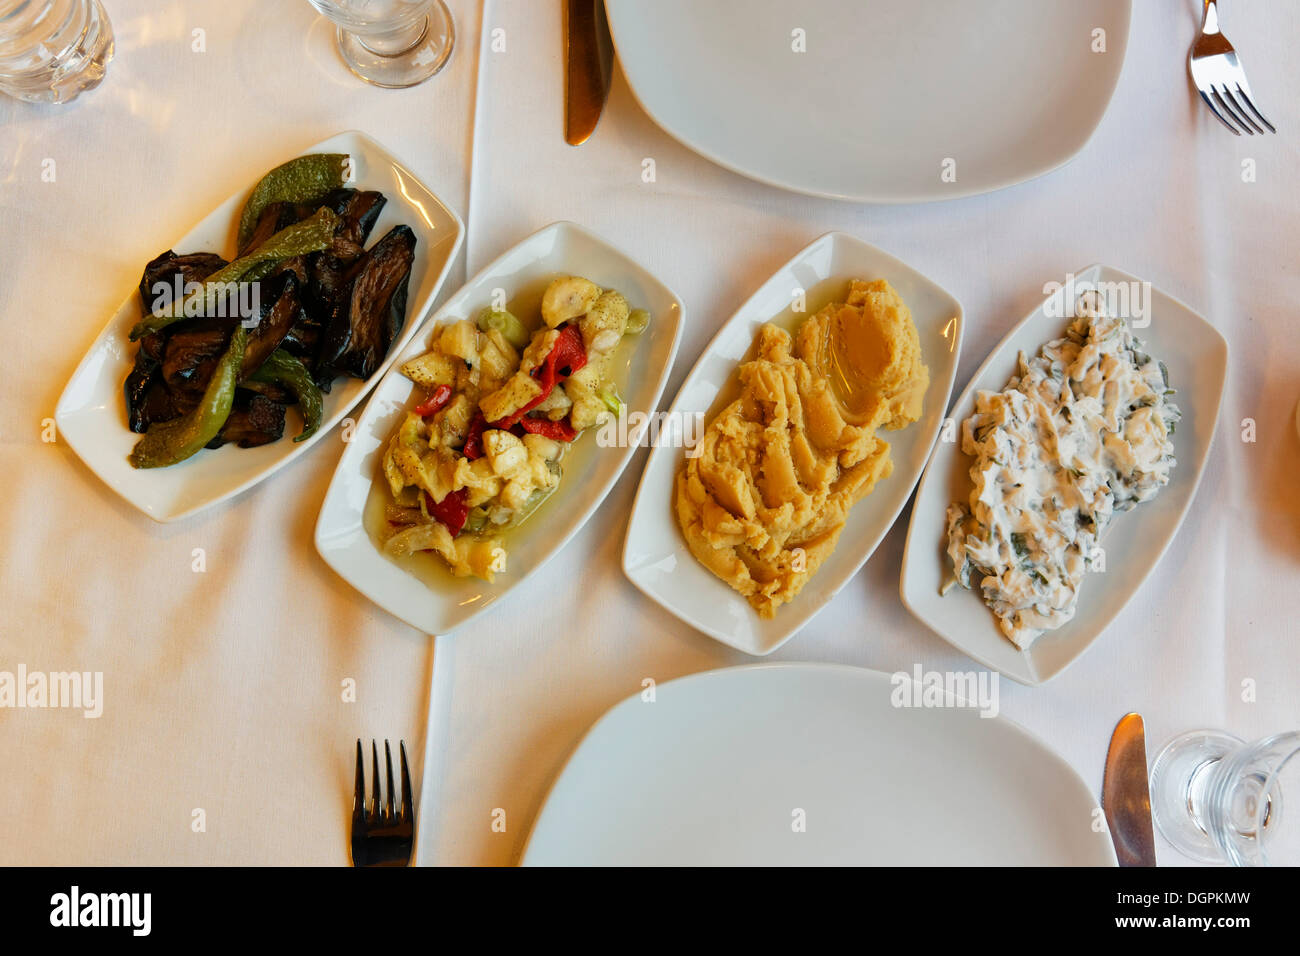 Mezeler, diversos aperitivos, Kuşadası turca, provincia de Aydin, región del Egeo, Turquía Foto de stock